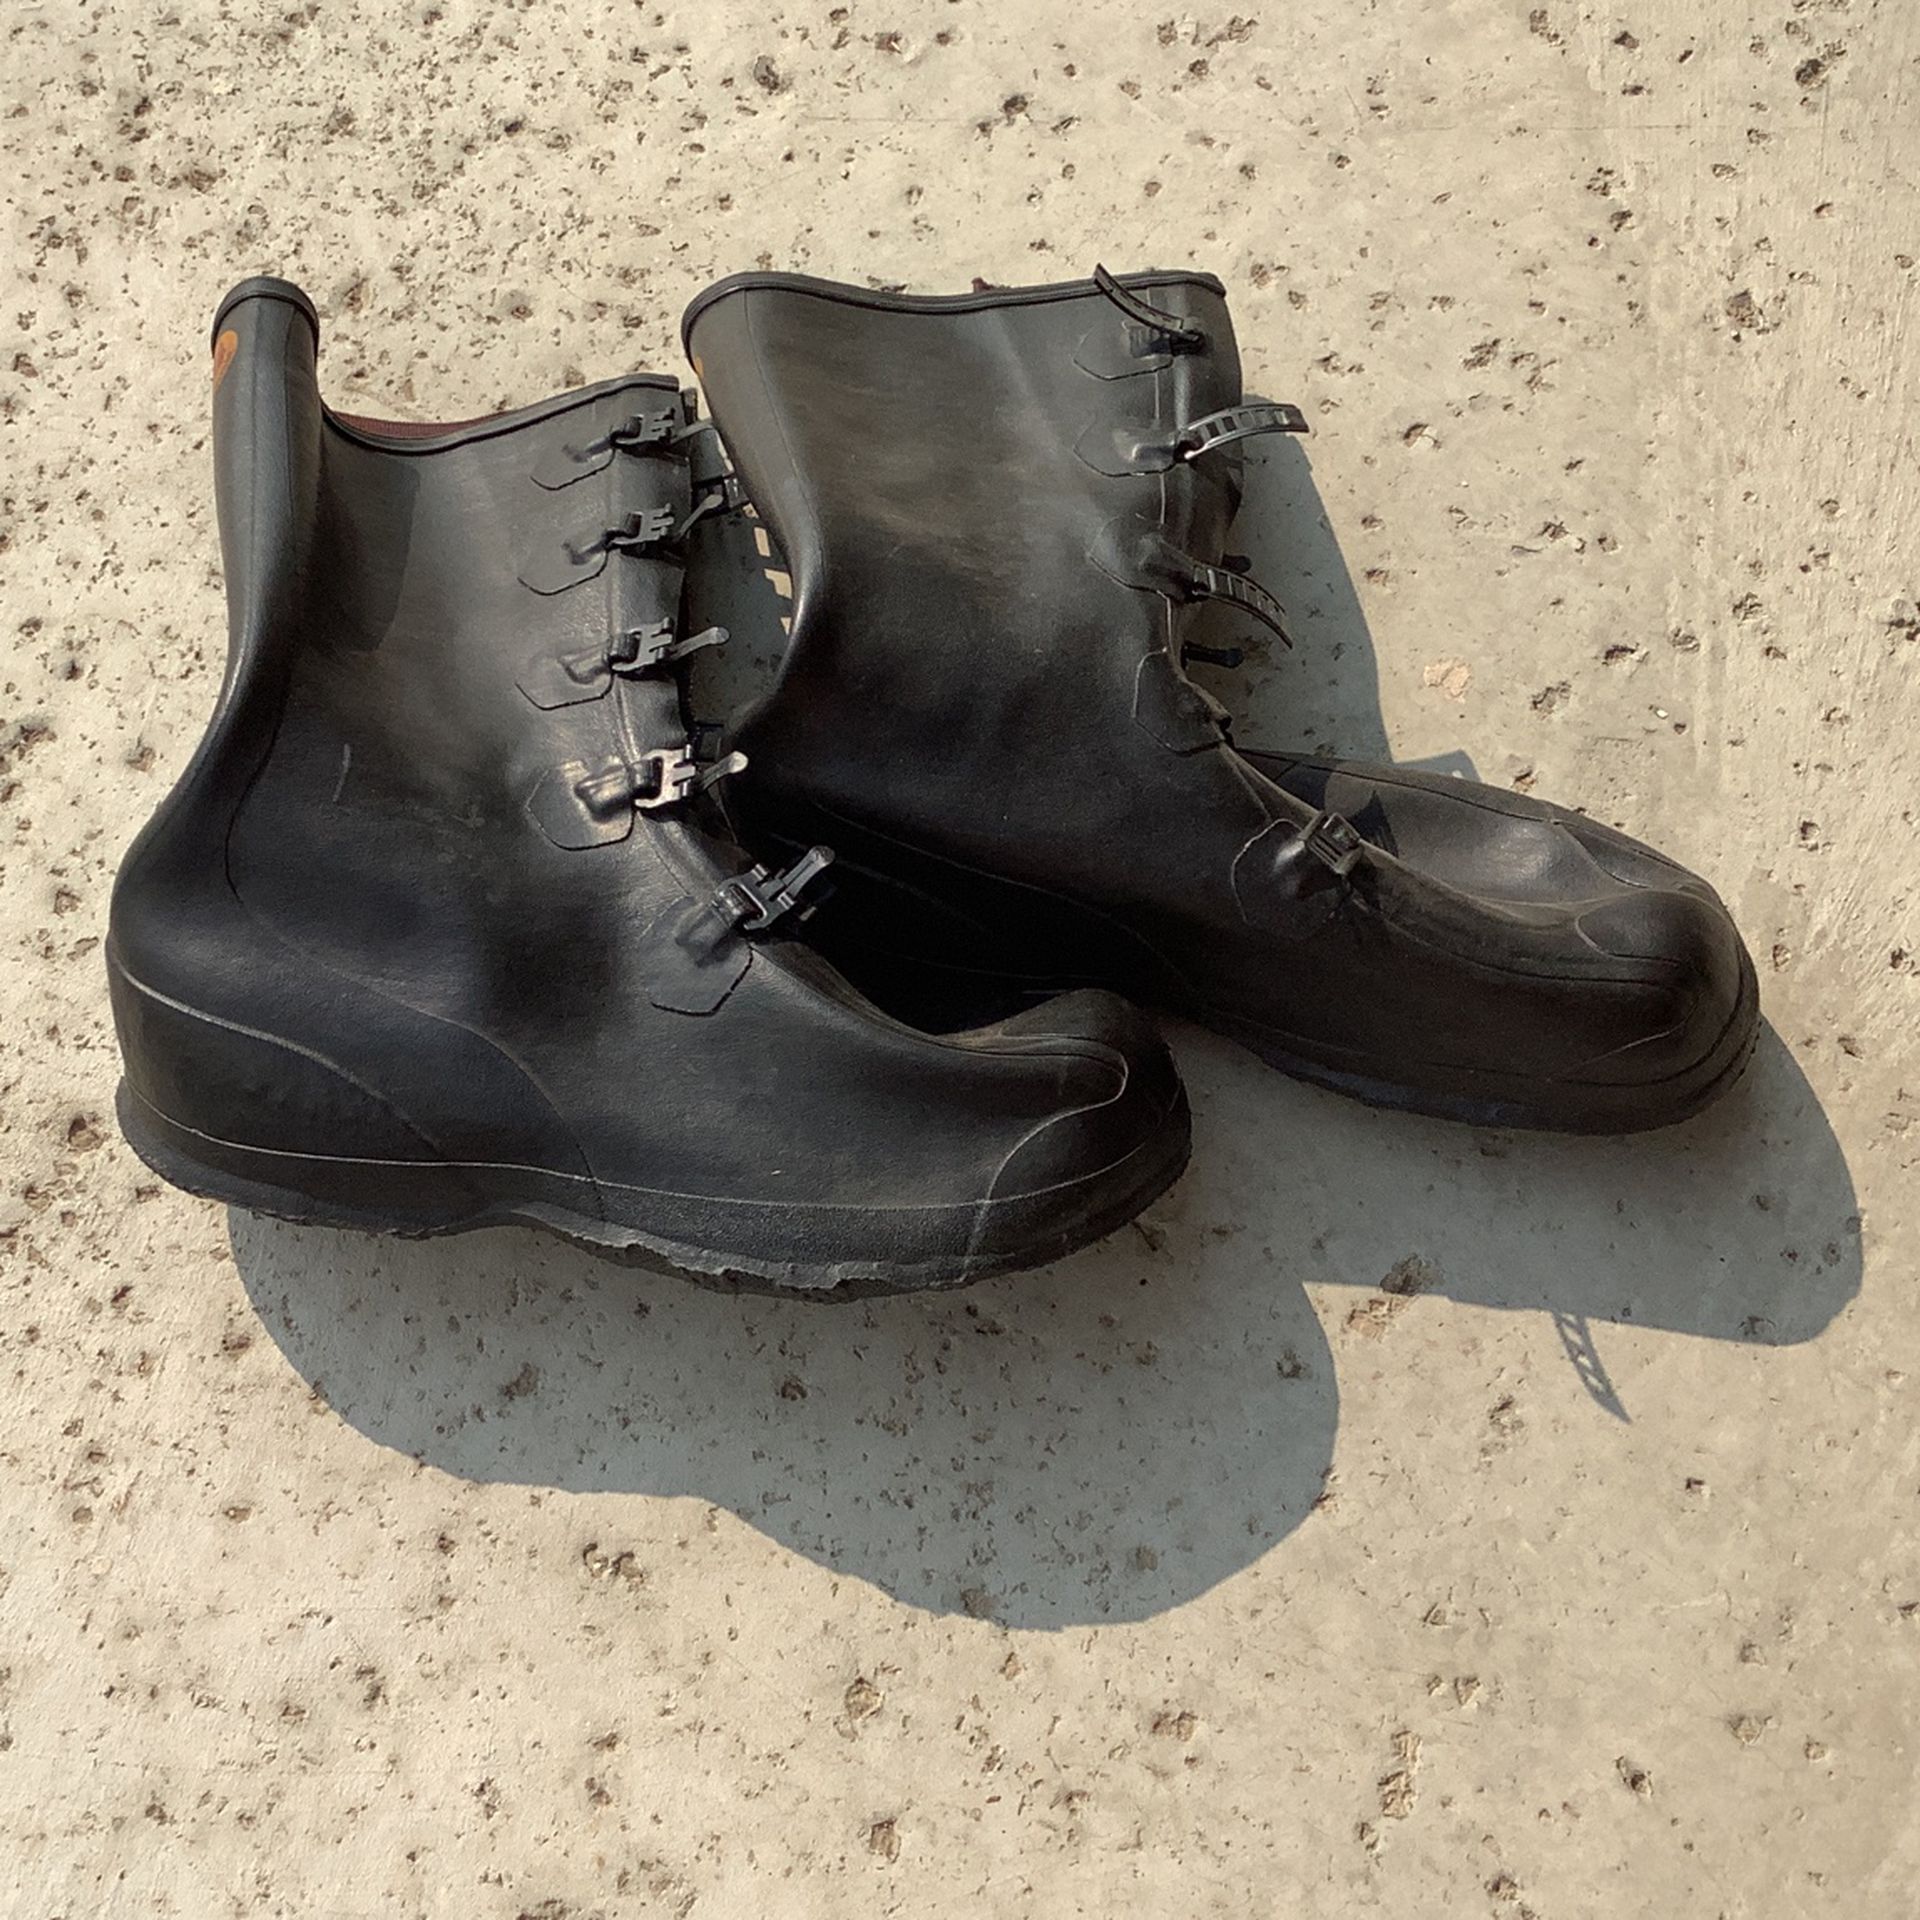 LaCrosse Black Waterproof Construction/Concrete 5-Buckle Boot Over Shoes (Men’s Size 10) Black